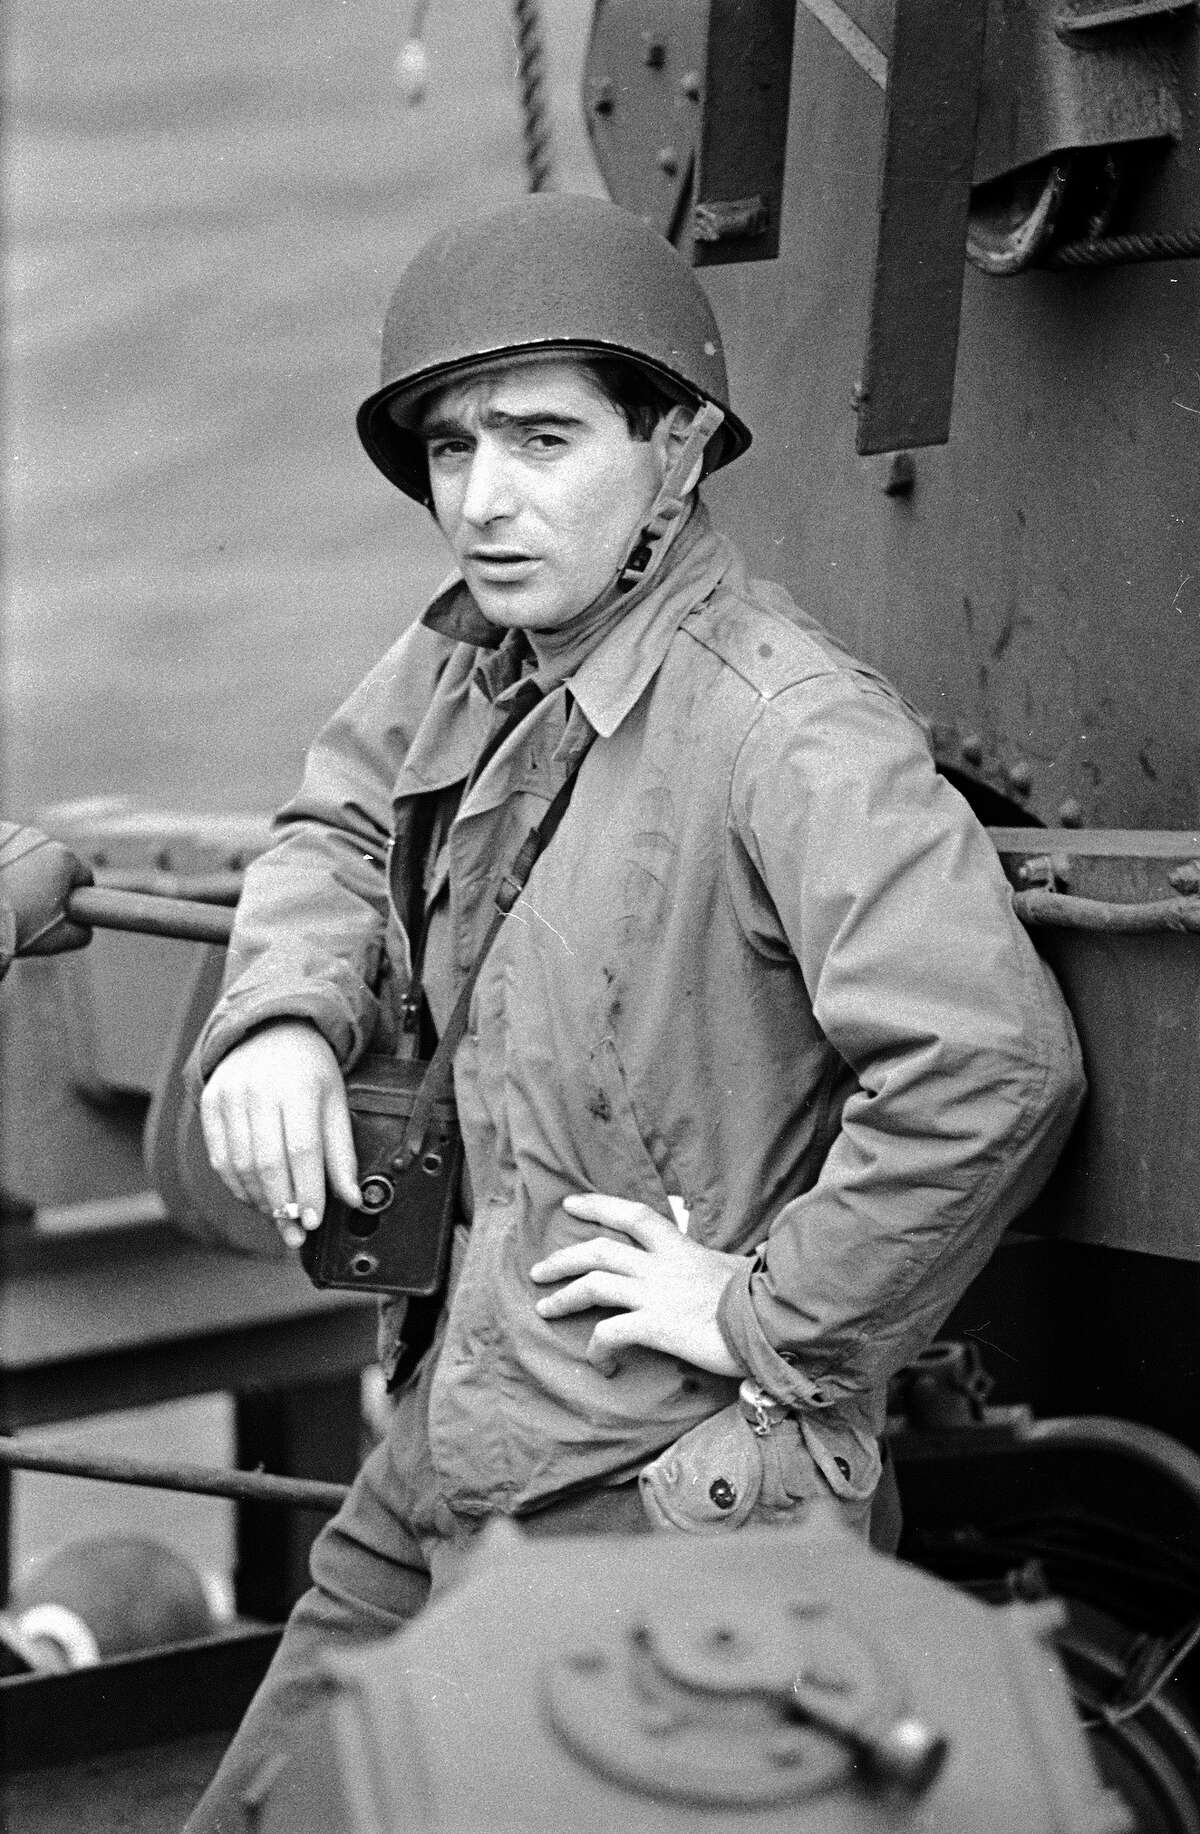 Robert Capa: A legendary war photographer